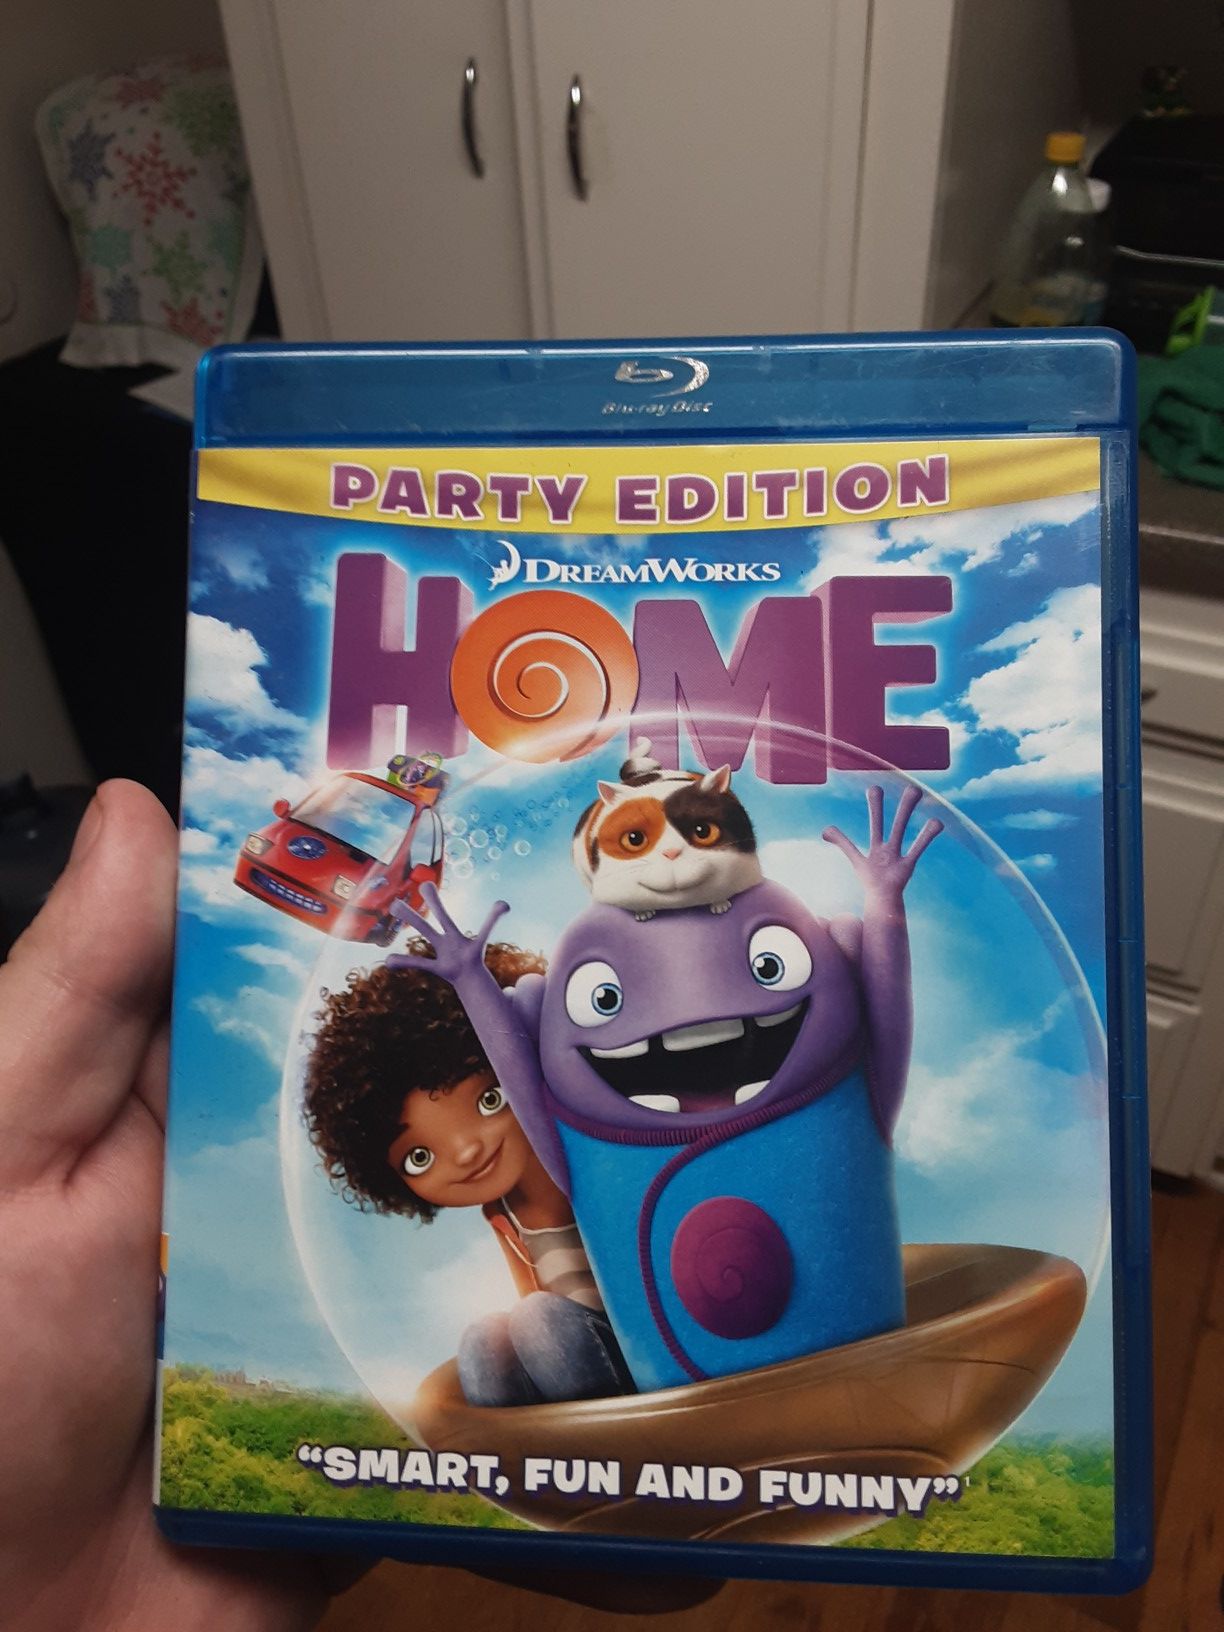 DreamWorks home Blu-ray movie